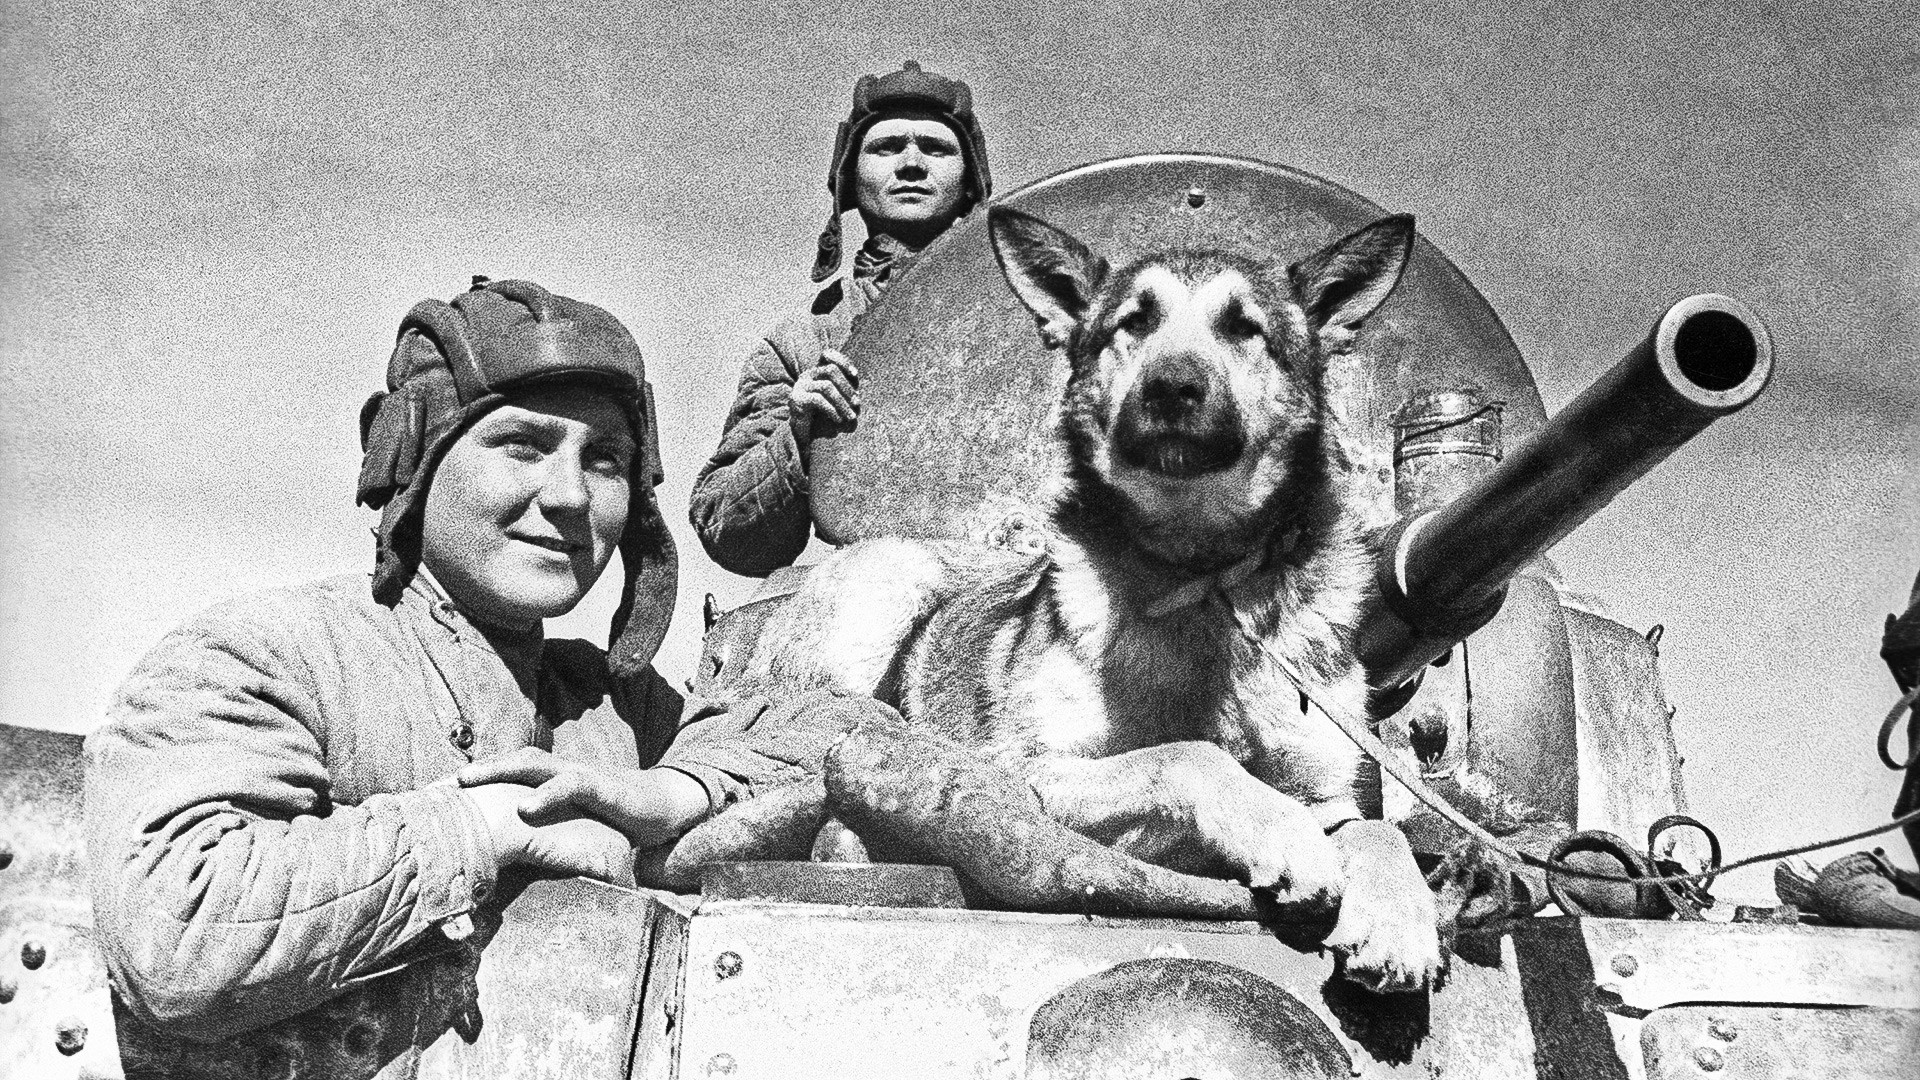 Južna fronta med drugo svetovno vojno: ekipa oklepnega avta s psom Džulbarsom